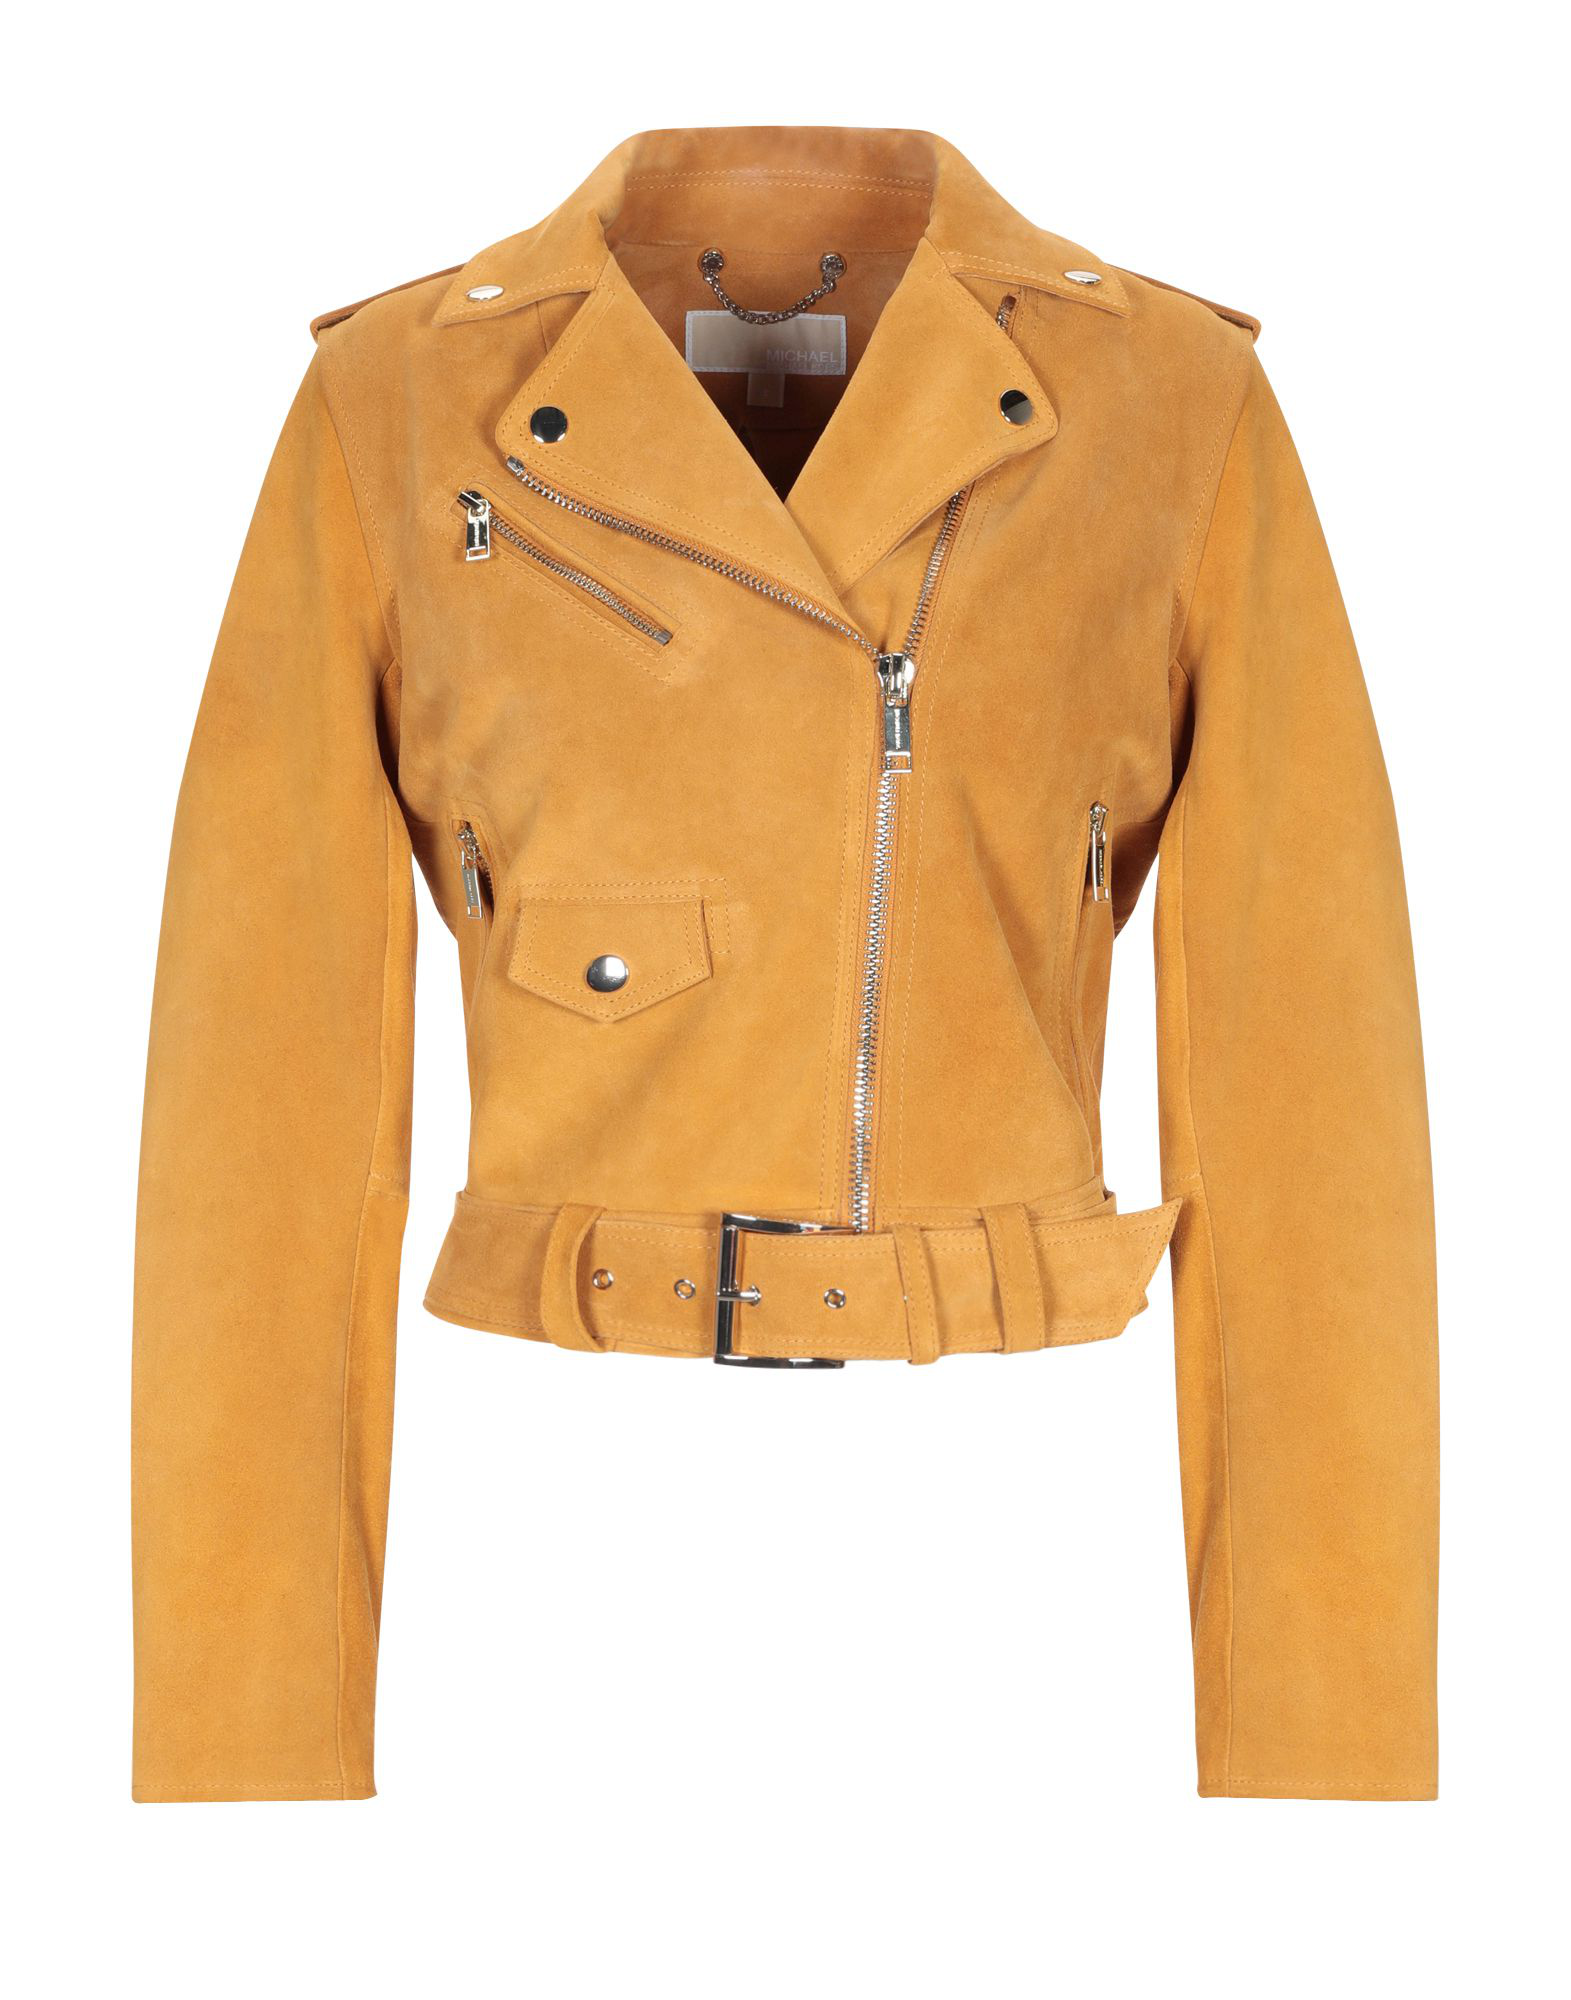 michael kors yellow leather jacket